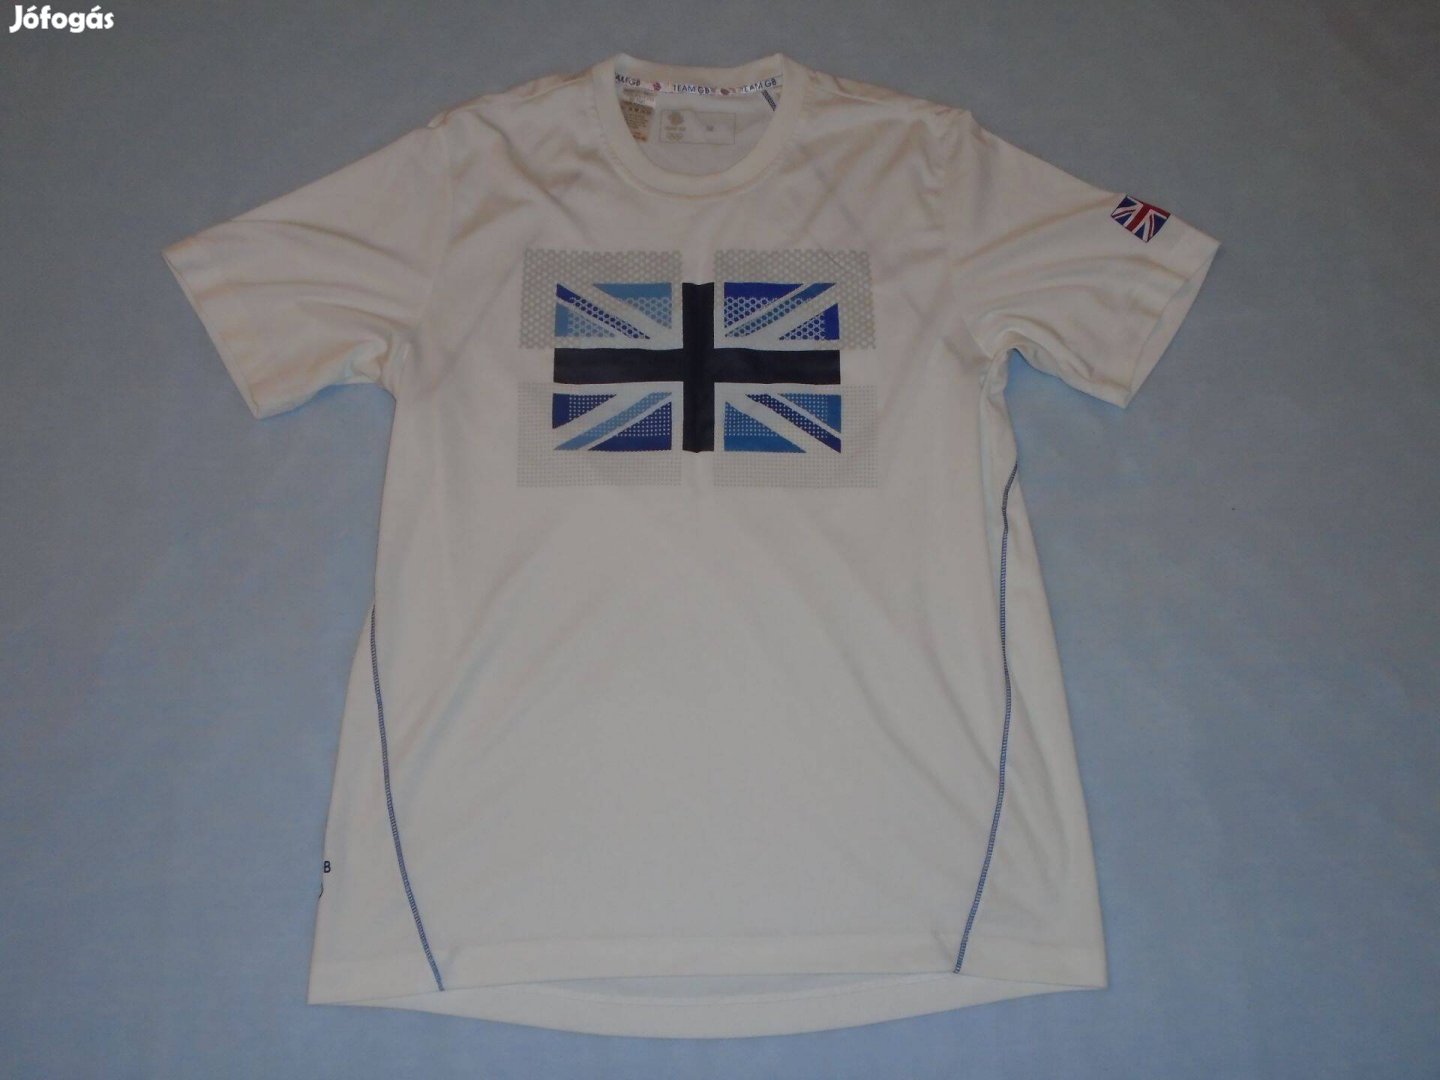 Fehér színű M méretű póló (méret M)